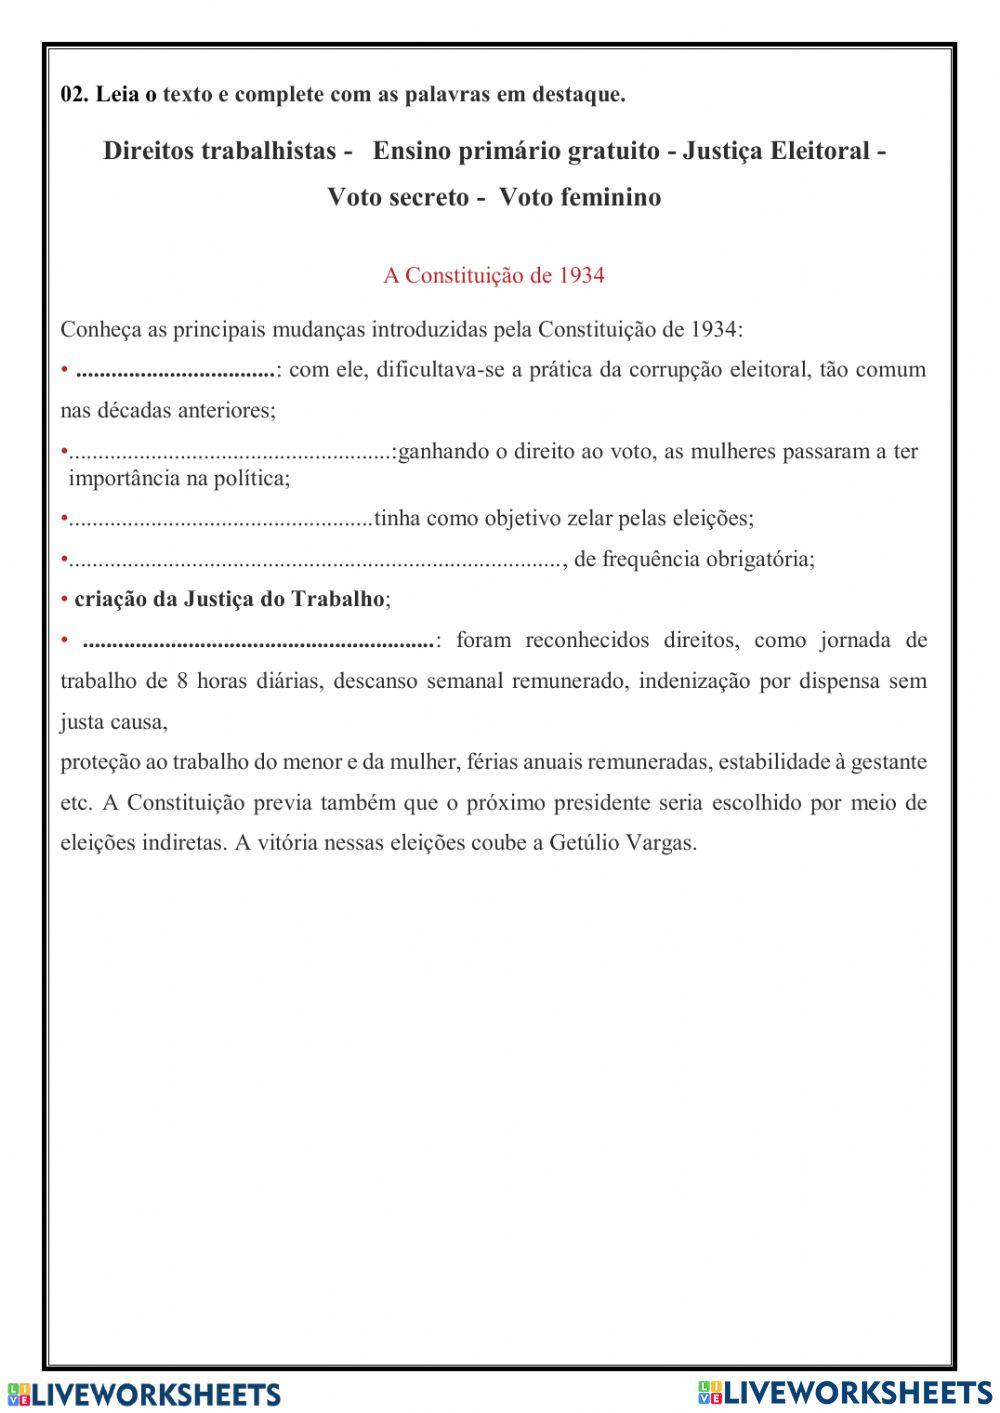 Exercícios Sobre Era Vargas - Quiz - Racha Cuca, PDF